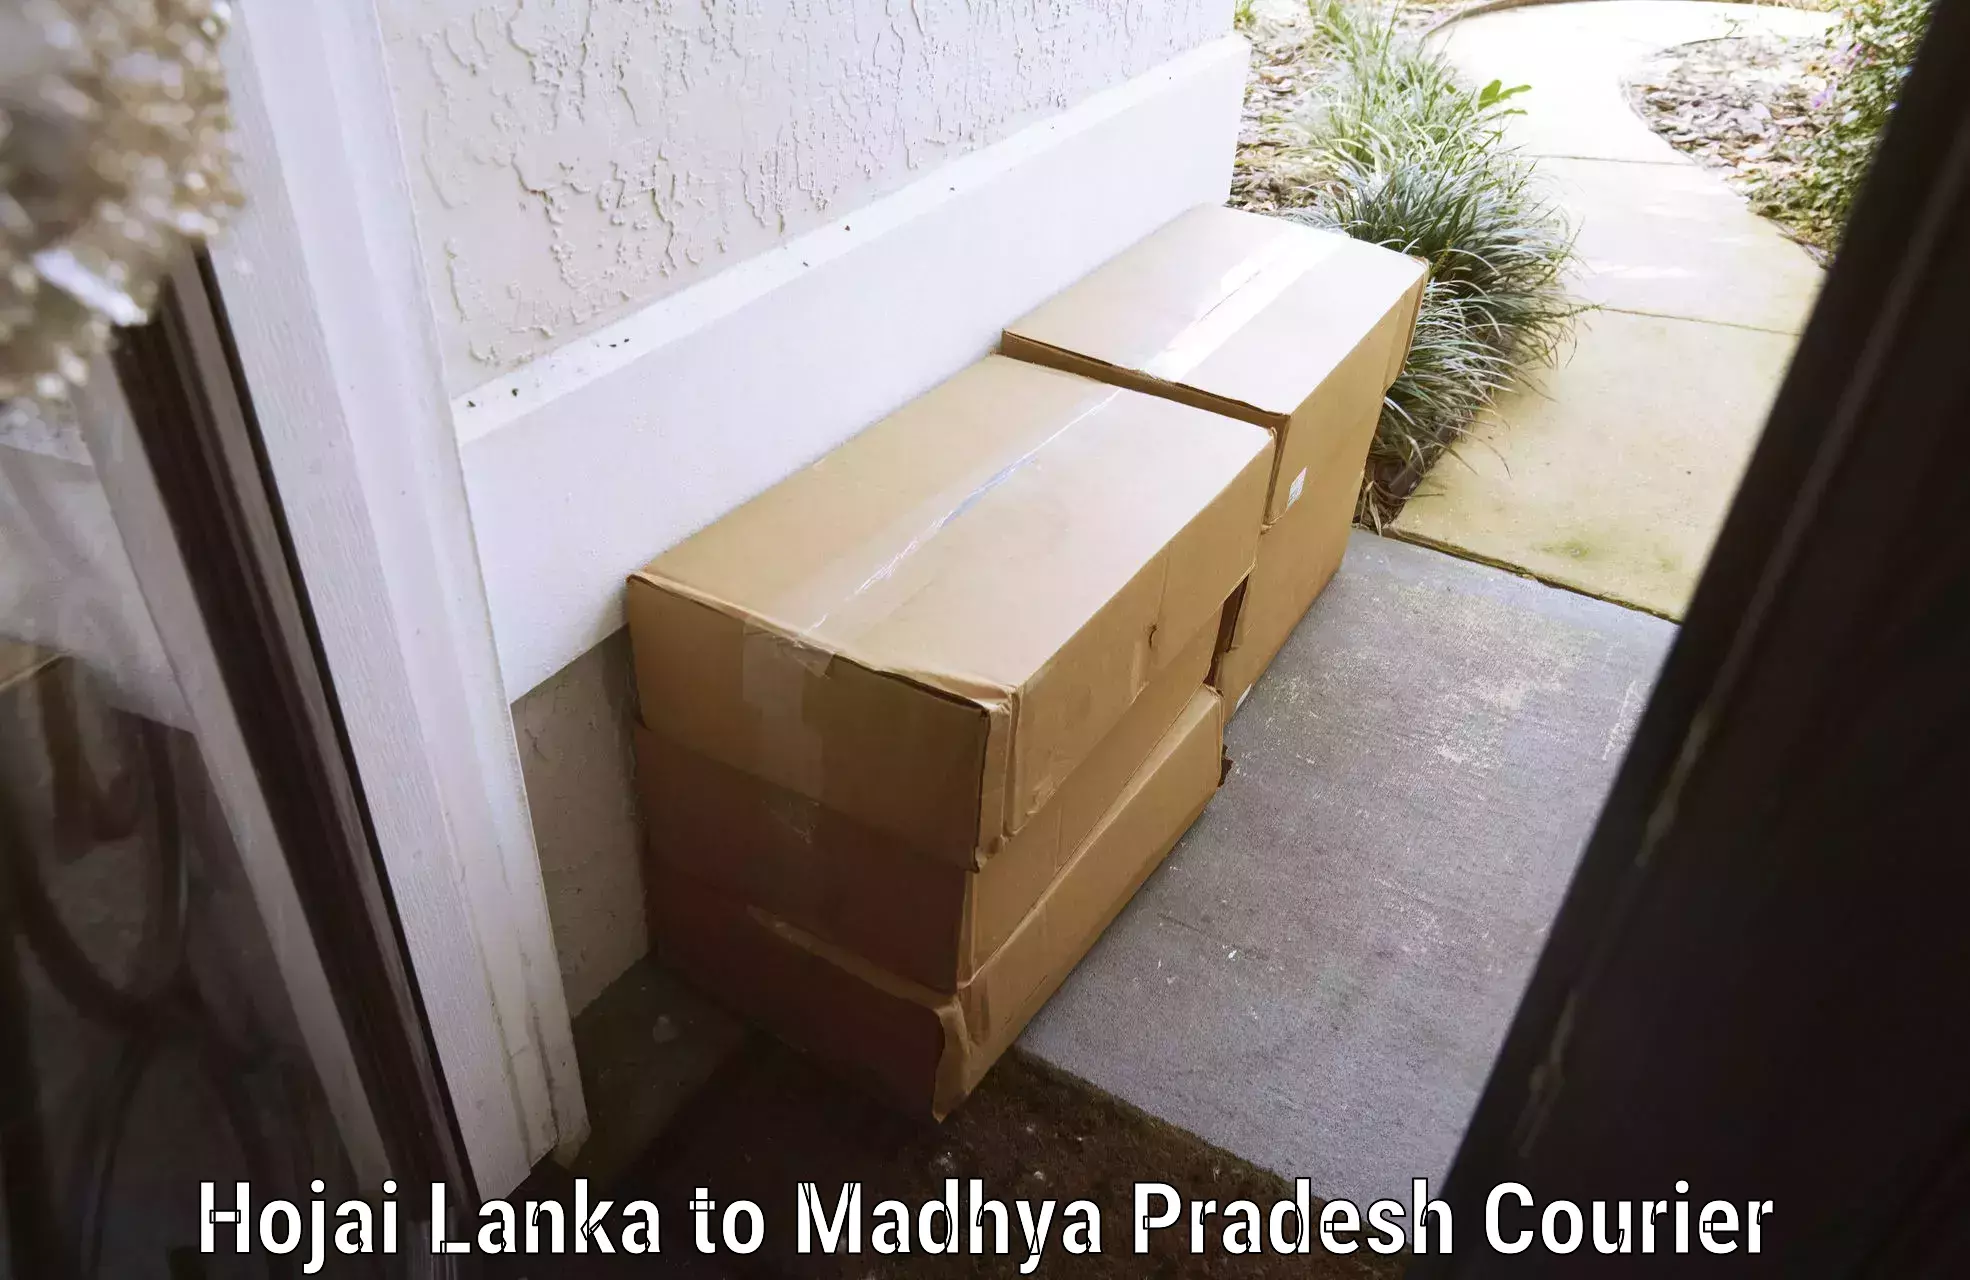 Corporate baggage transport Hojai Lanka to Madwas